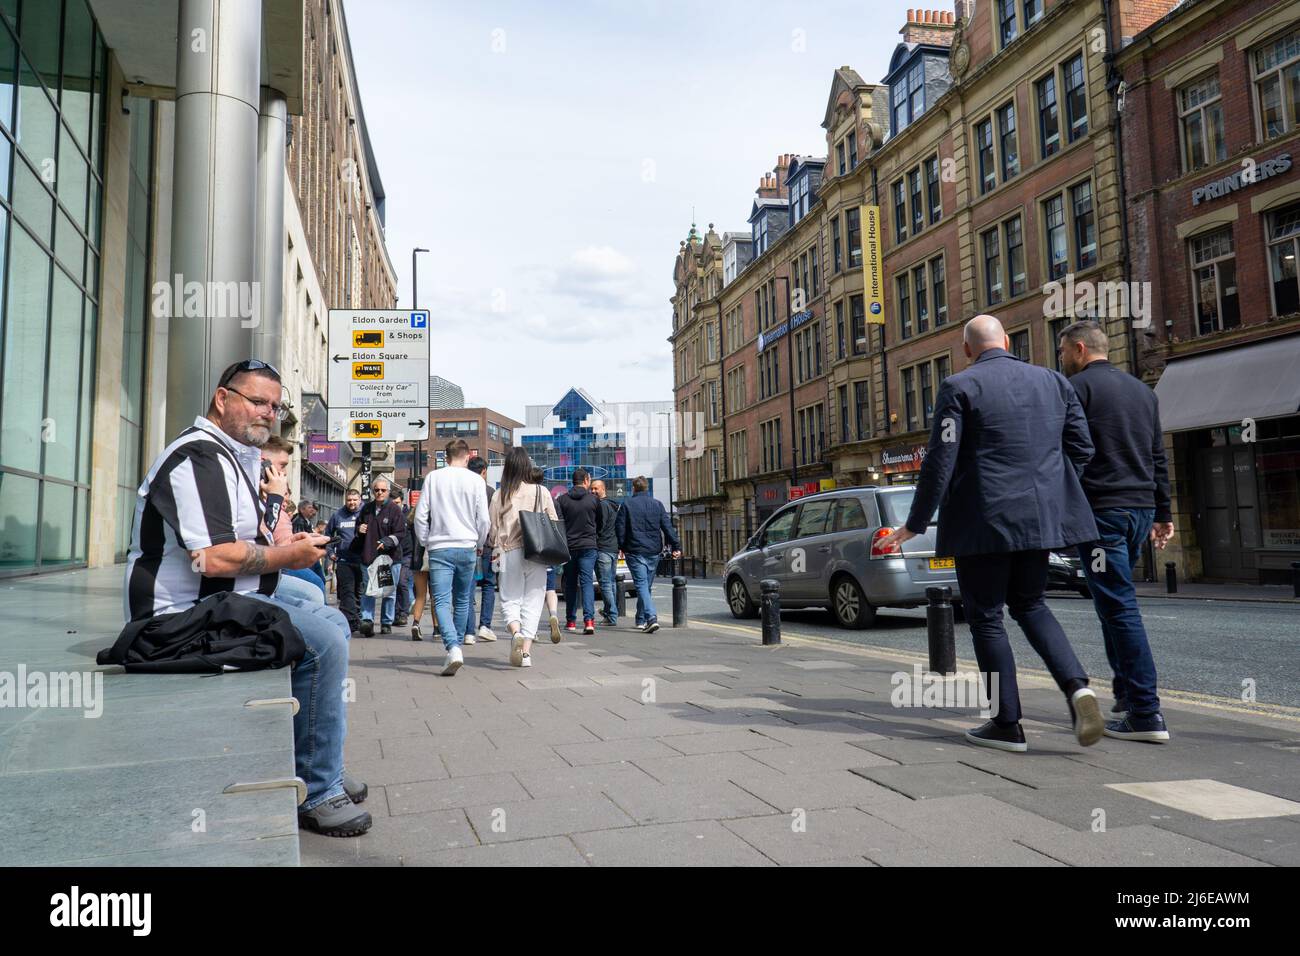 Leute auf der Straße in Gallowgate, Newcastle Upon Tyne, Großbritannien Stockfoto